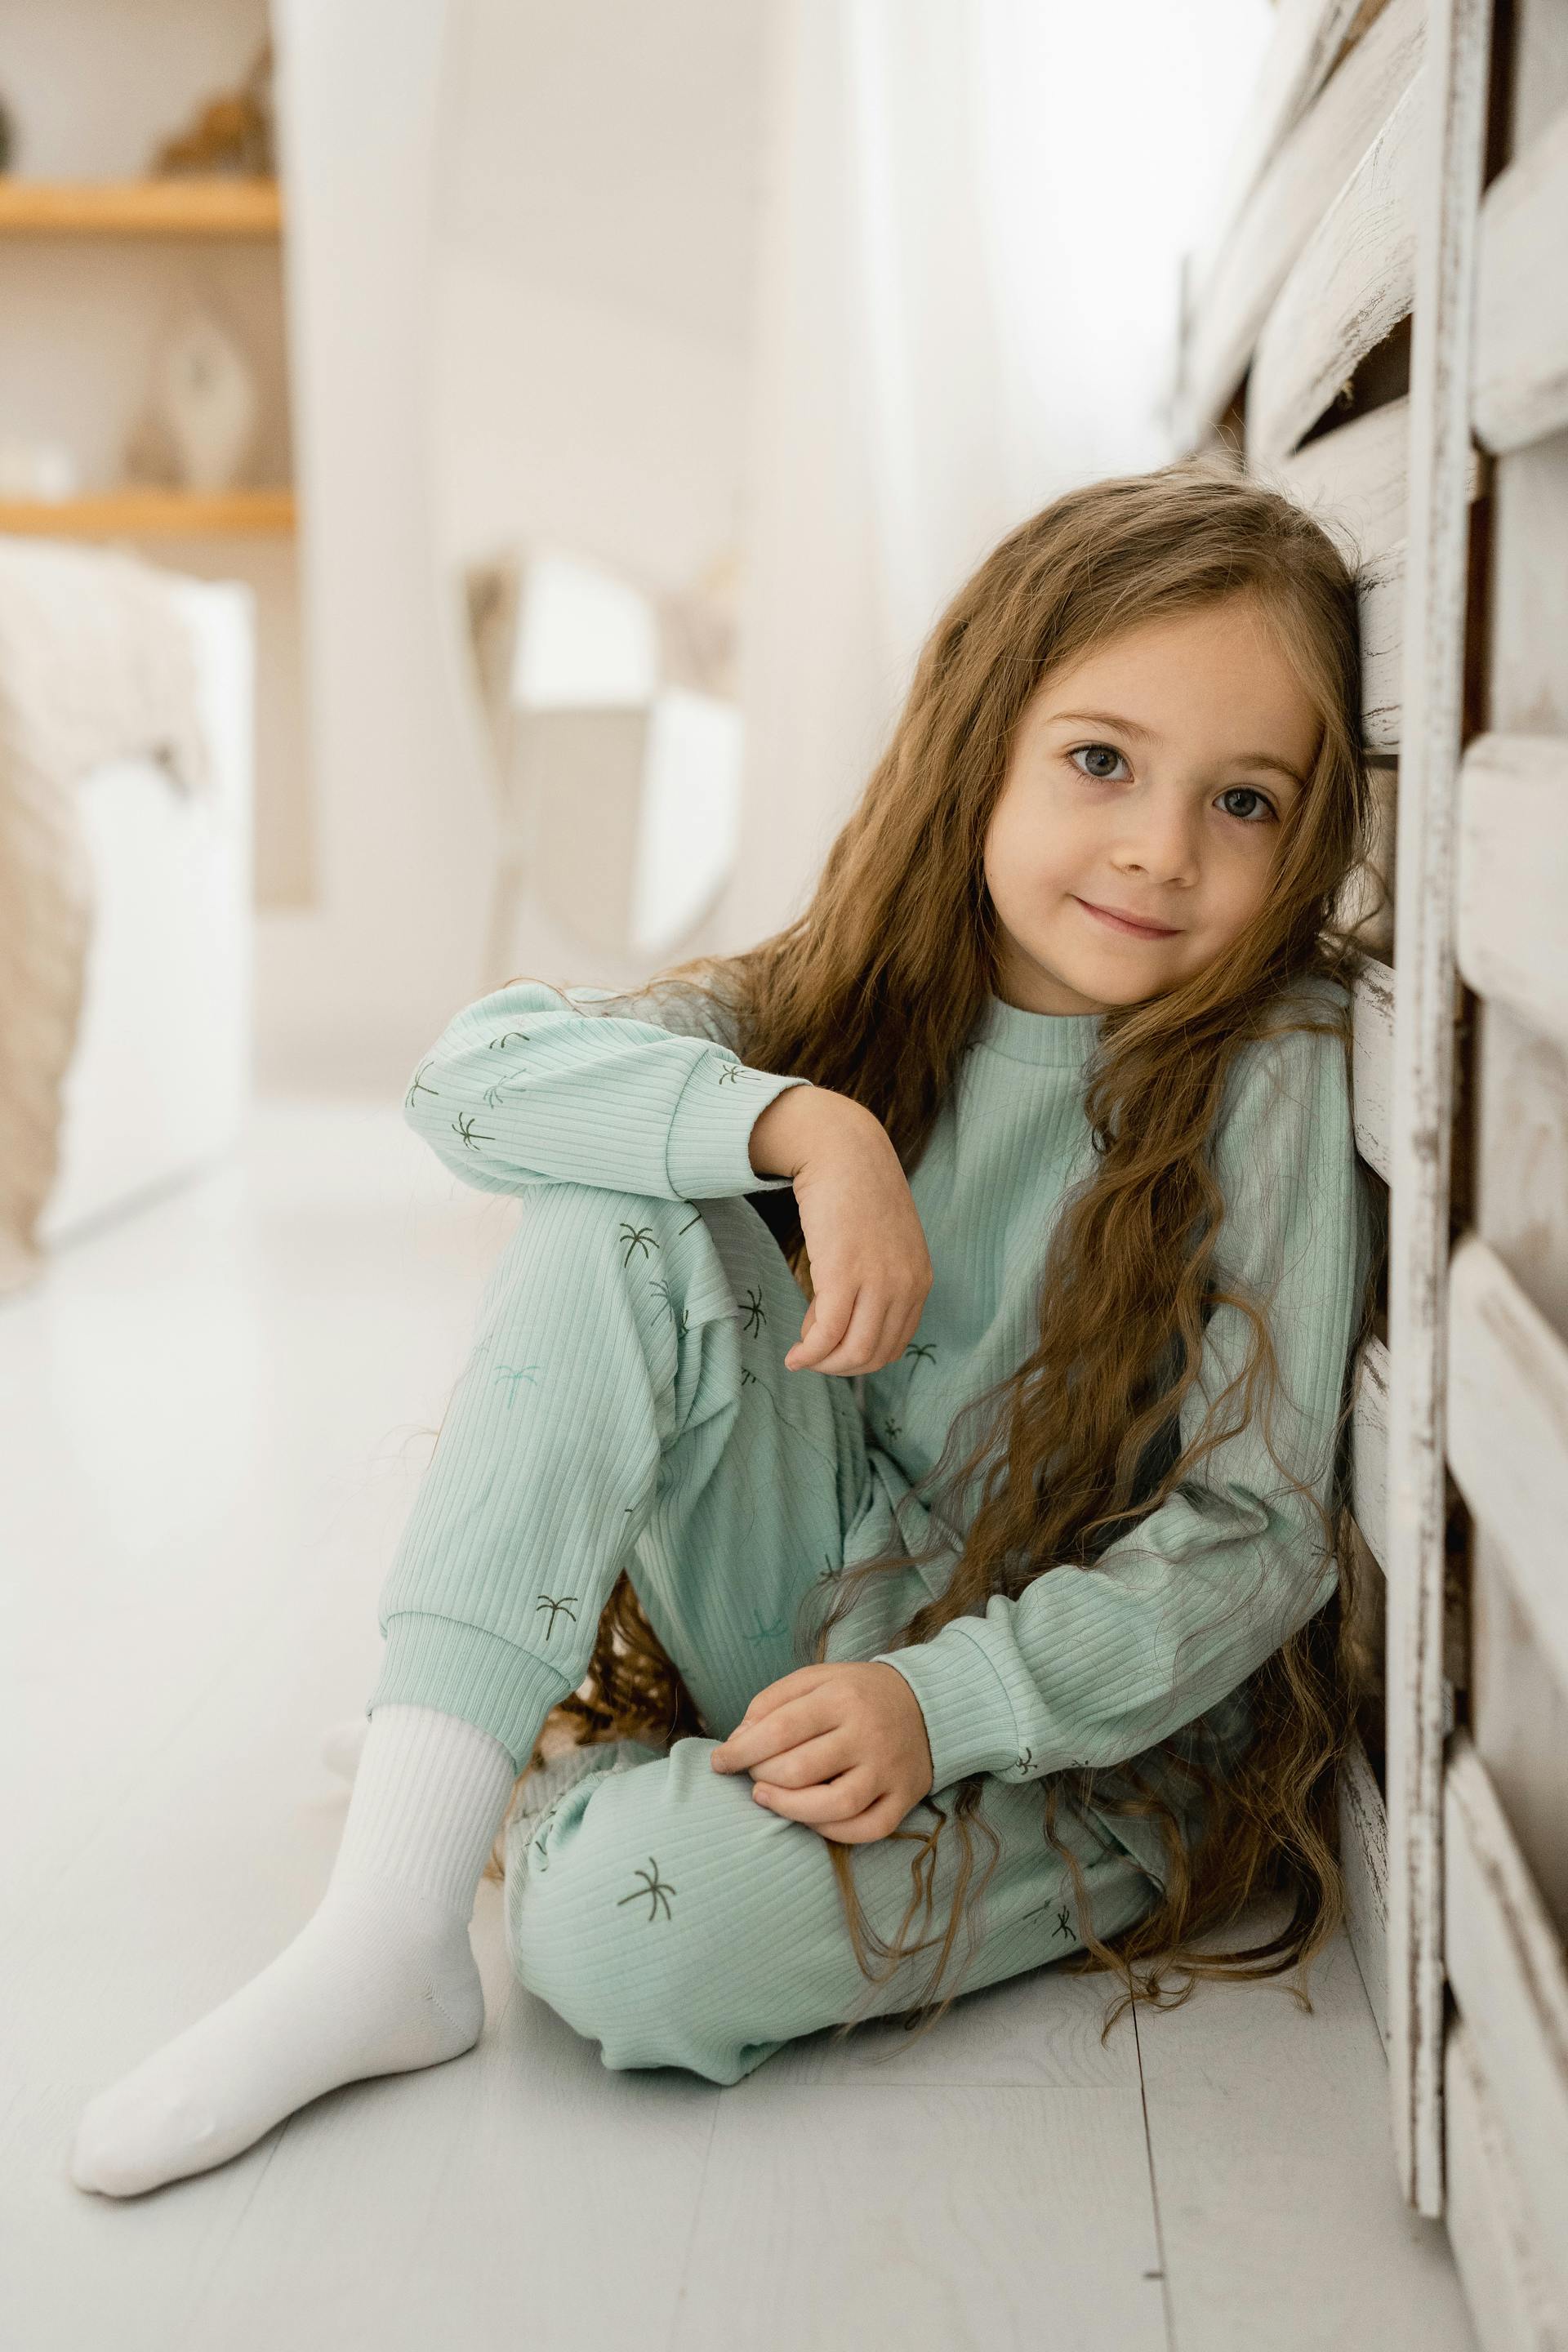 Une petite fille souriante aux cheveux longs | Source : Pexels